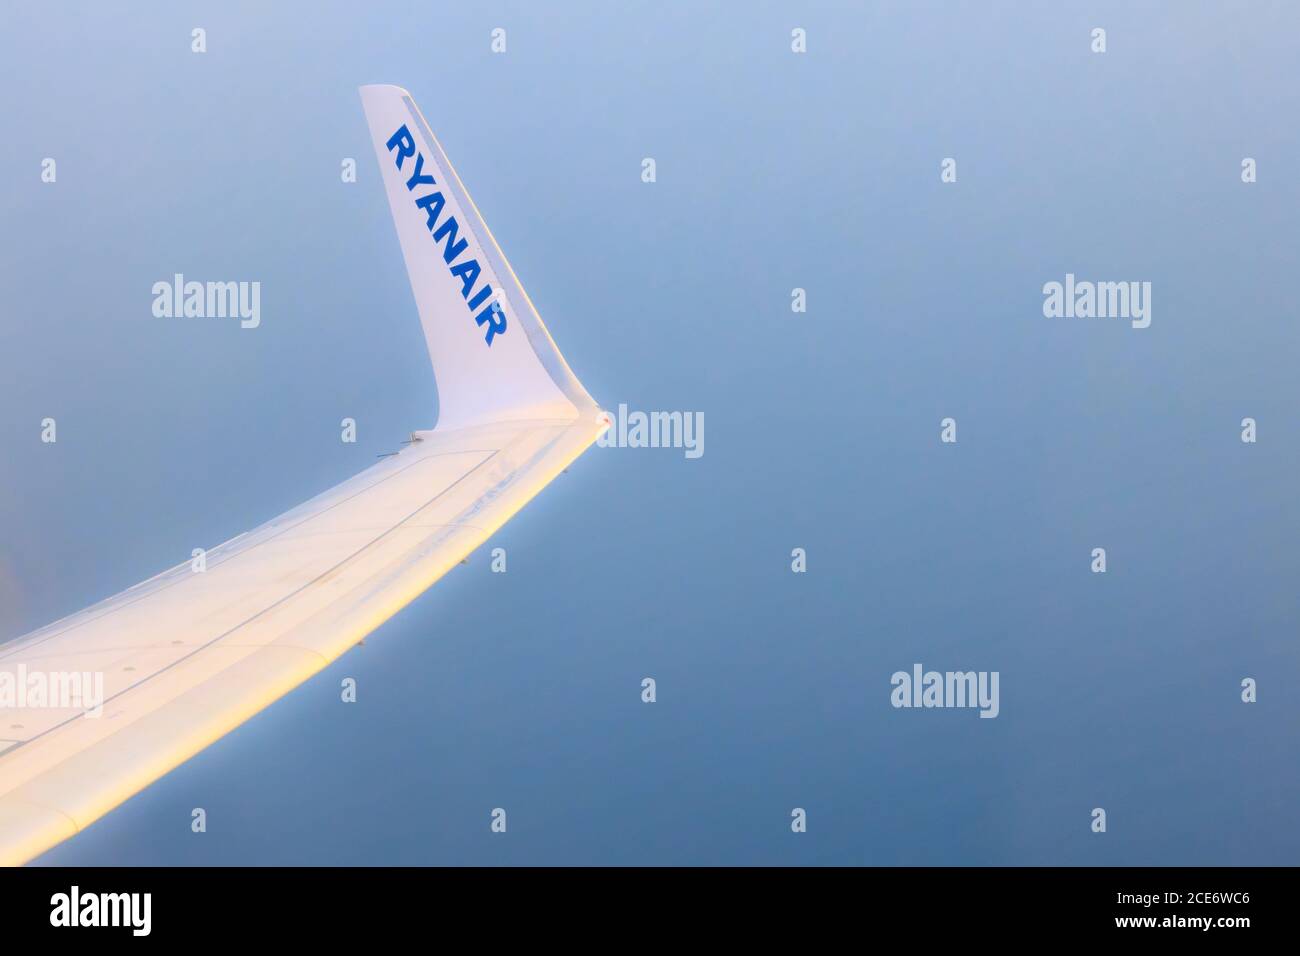 Ryanair-Logo der Billigfluggesellschaft auf dem Flugzeugflügel Stockfoto